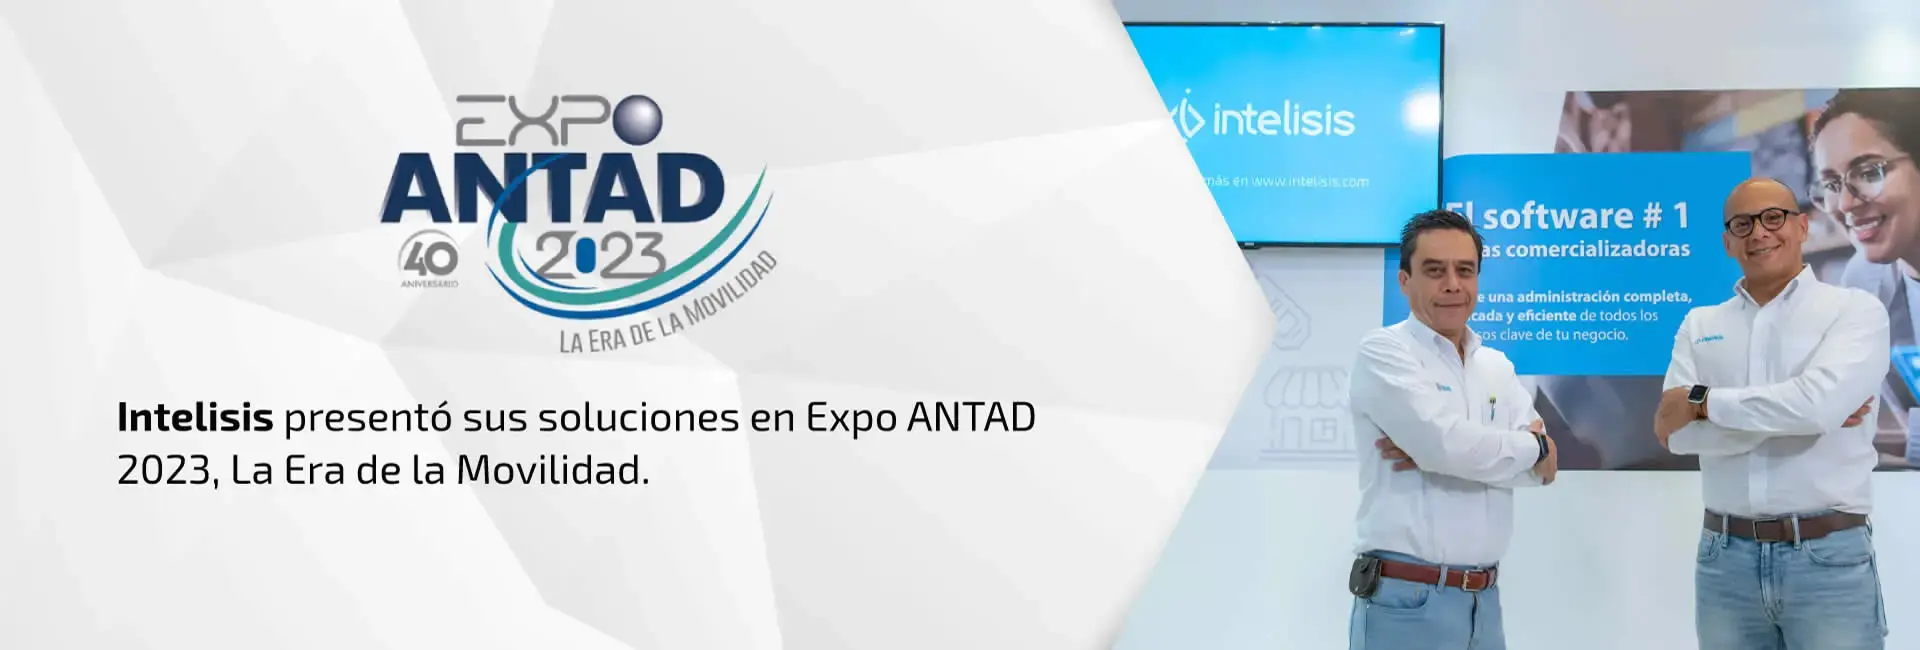 Intelisis Presente en Expo Antad 2023